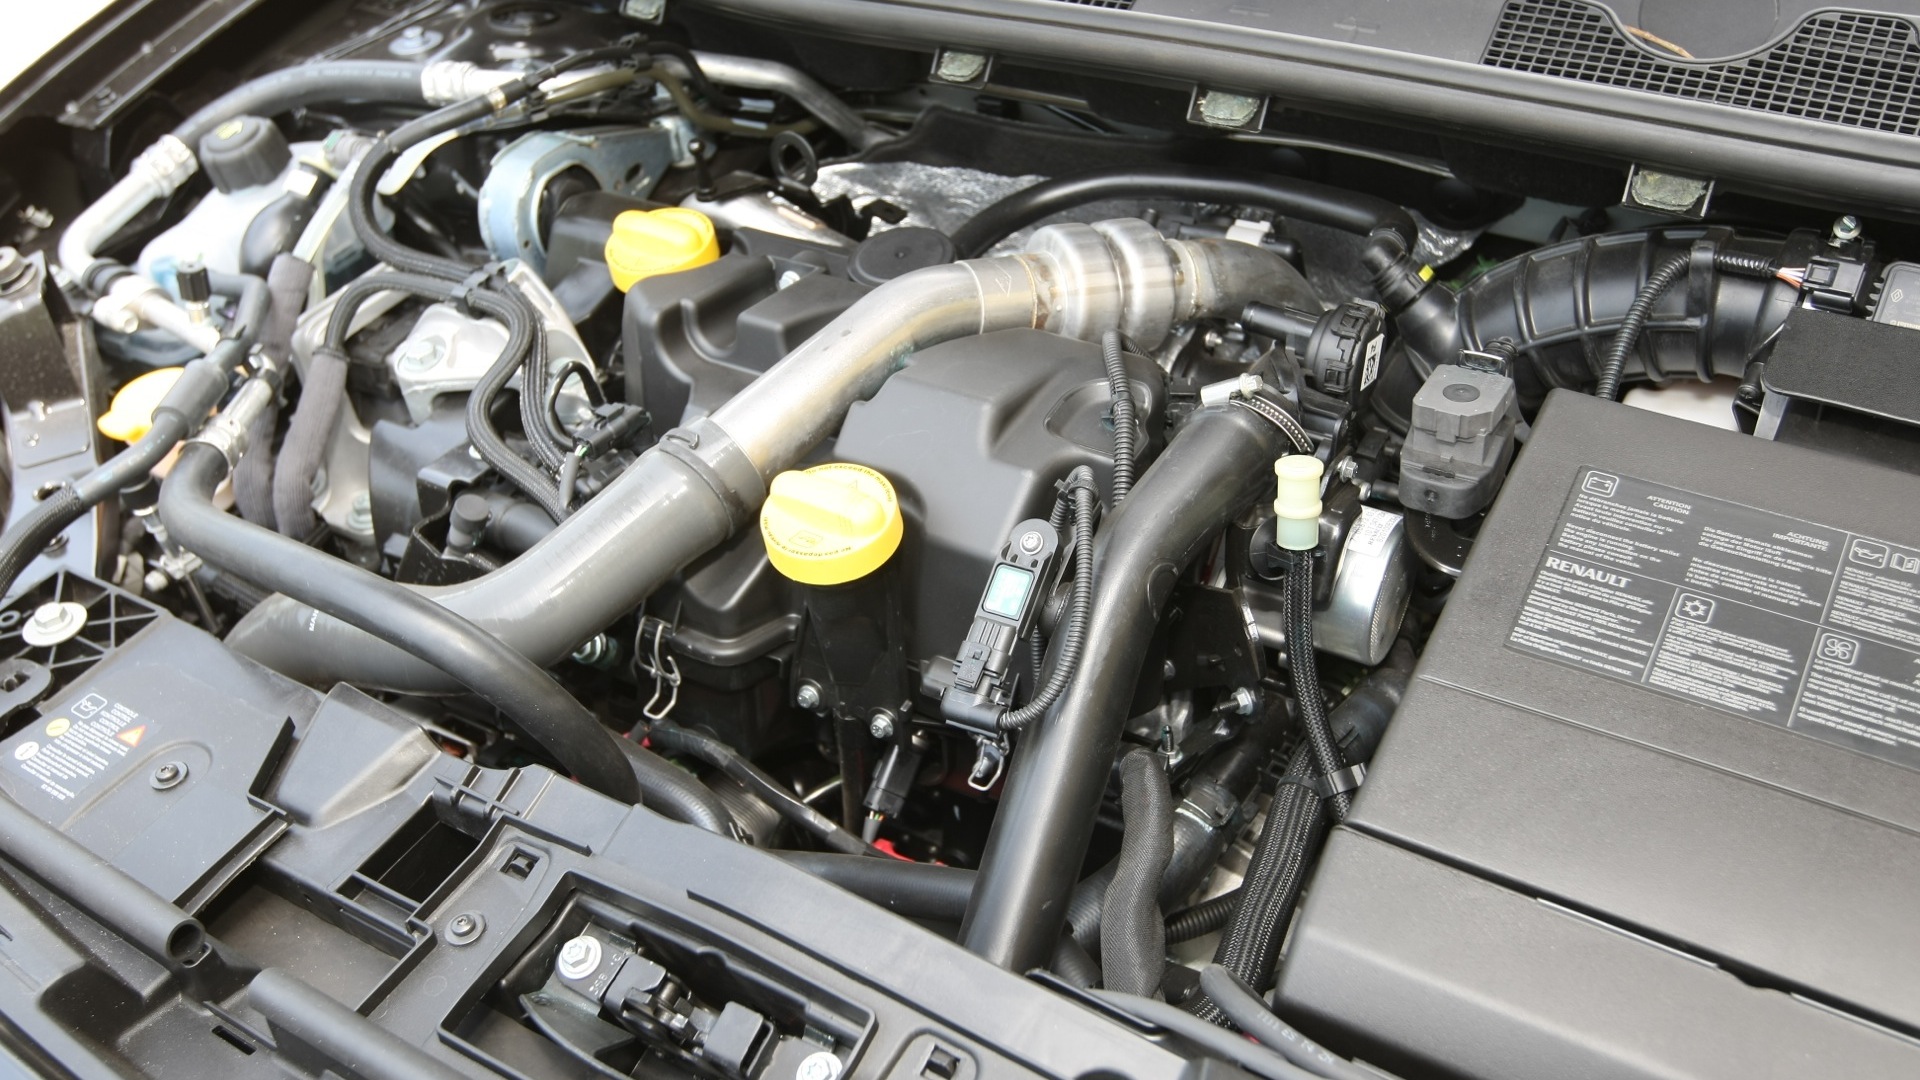 Renault-Fluence-e4-2013-Petrol-Interior